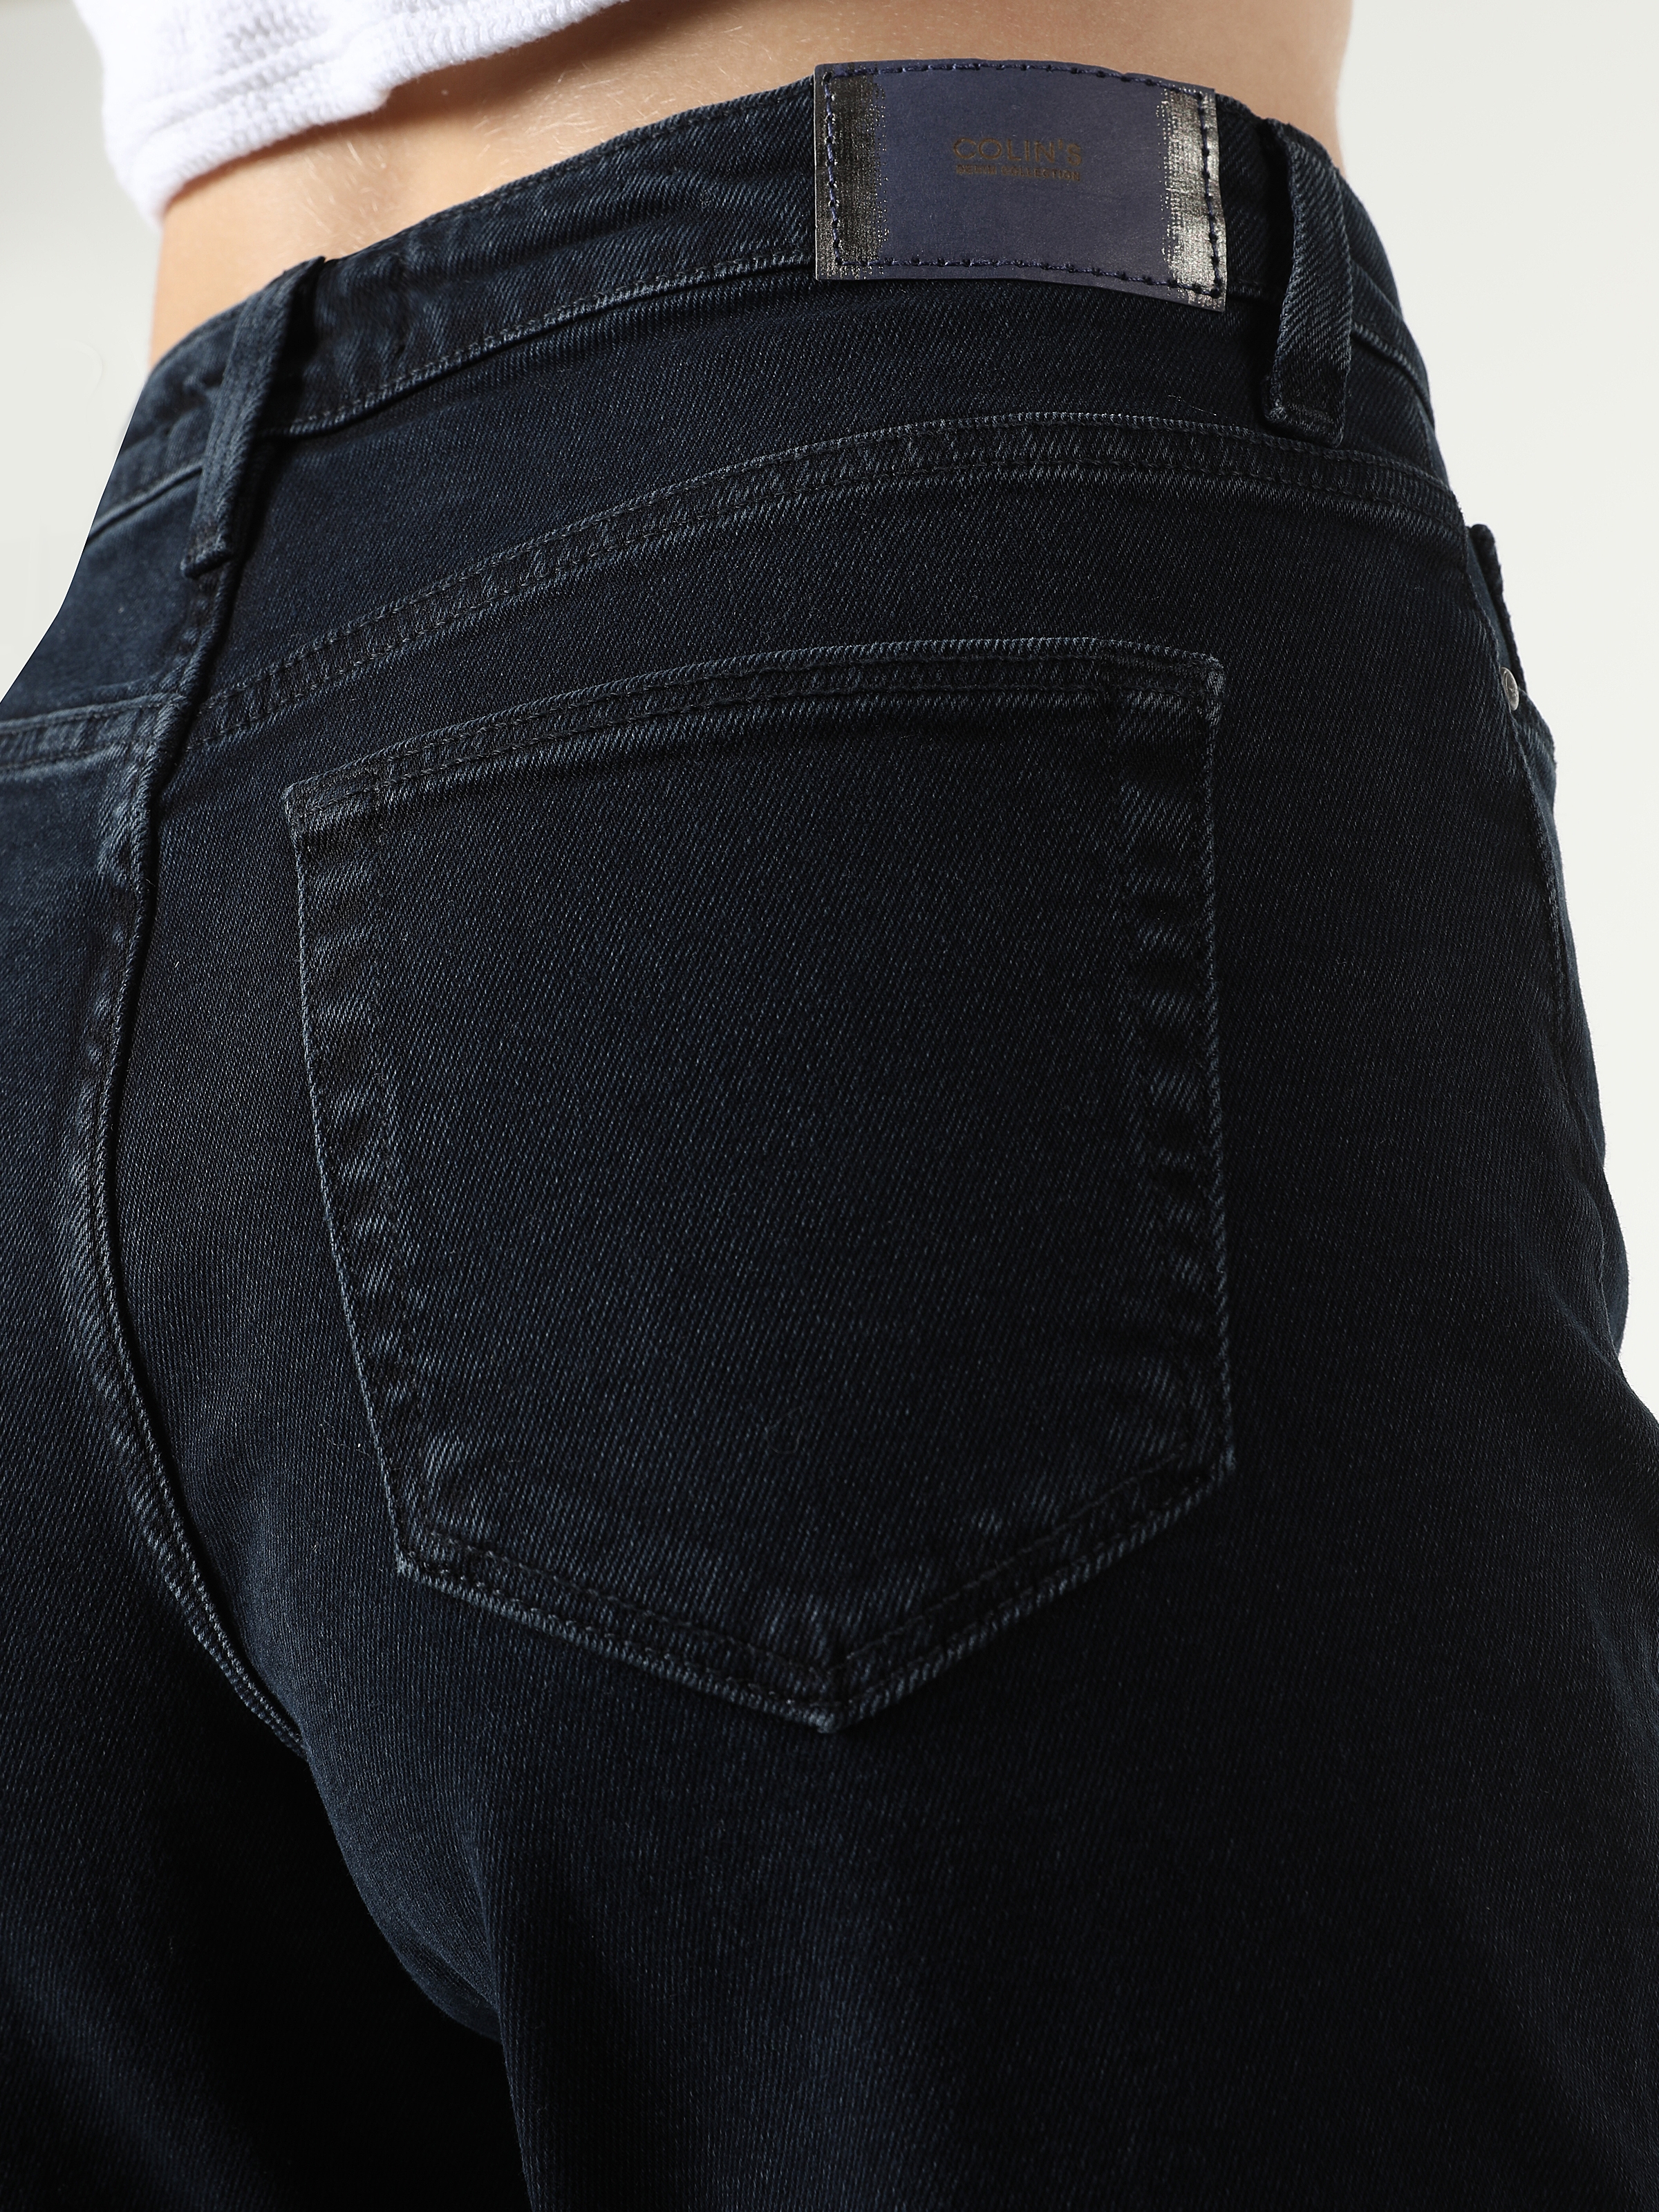 Afficher les détails de 891 Maya Slim Fit Taille Normale Jambe Fuselée Jean Noir Pantalon Femme